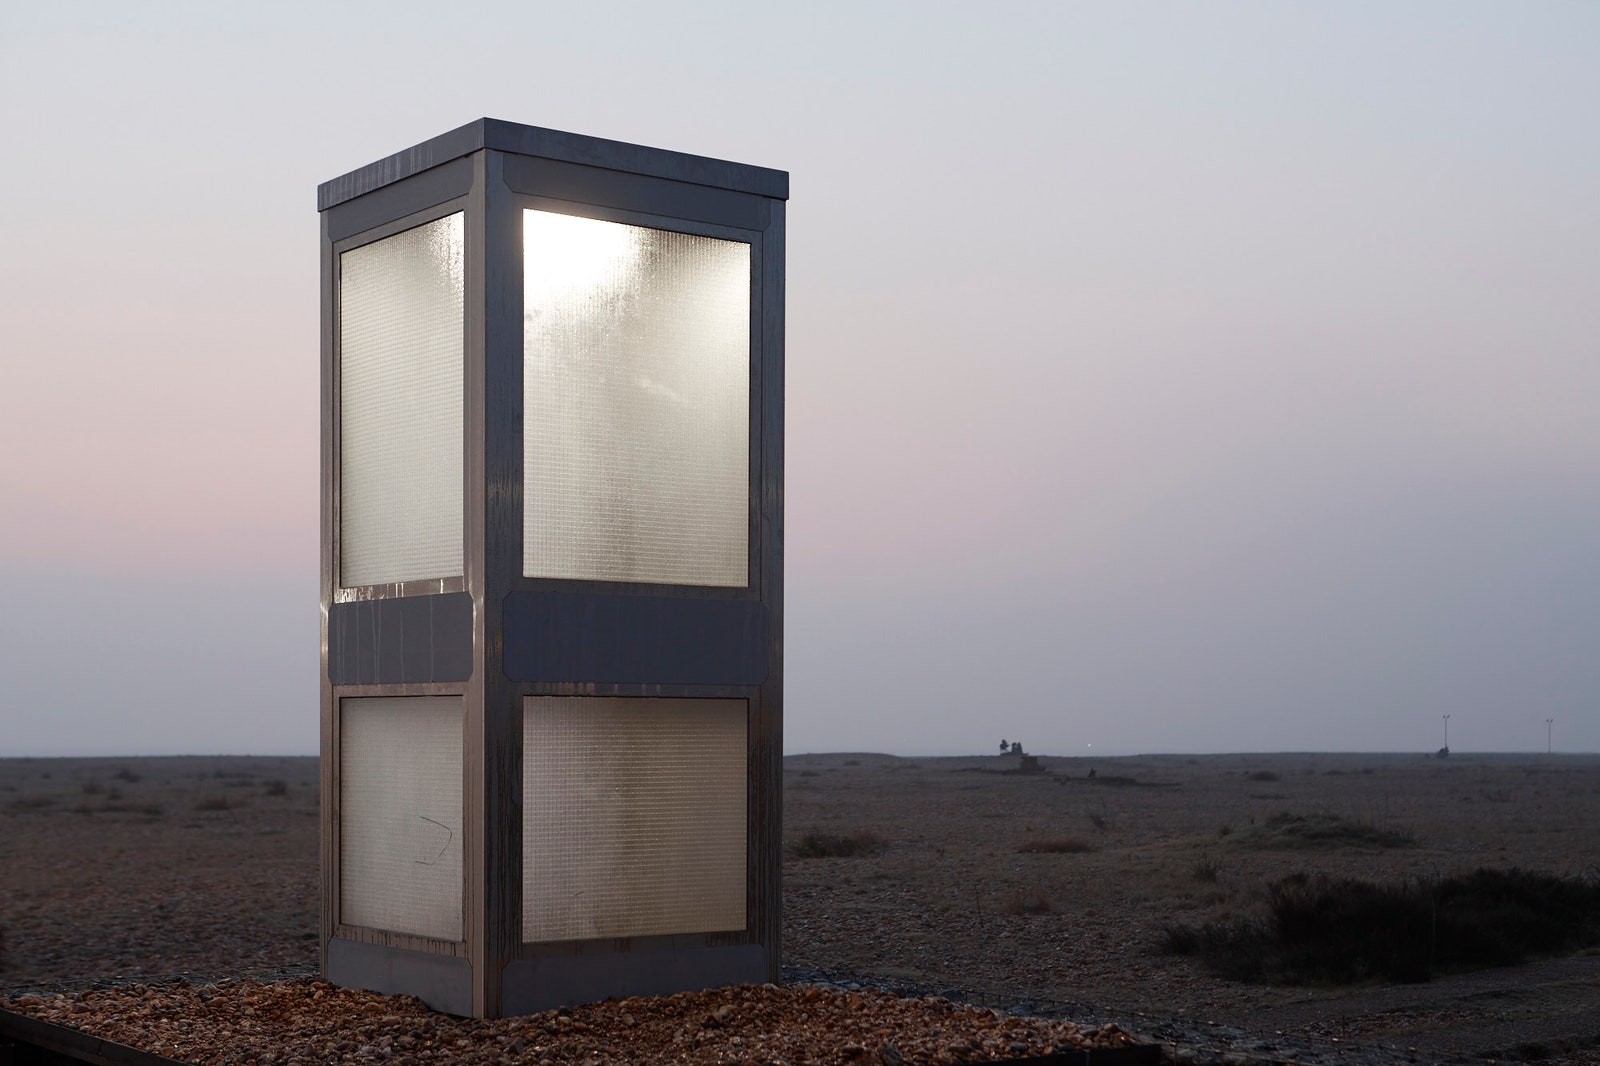 Телефонная будка в пустыне артпроект о брекзите